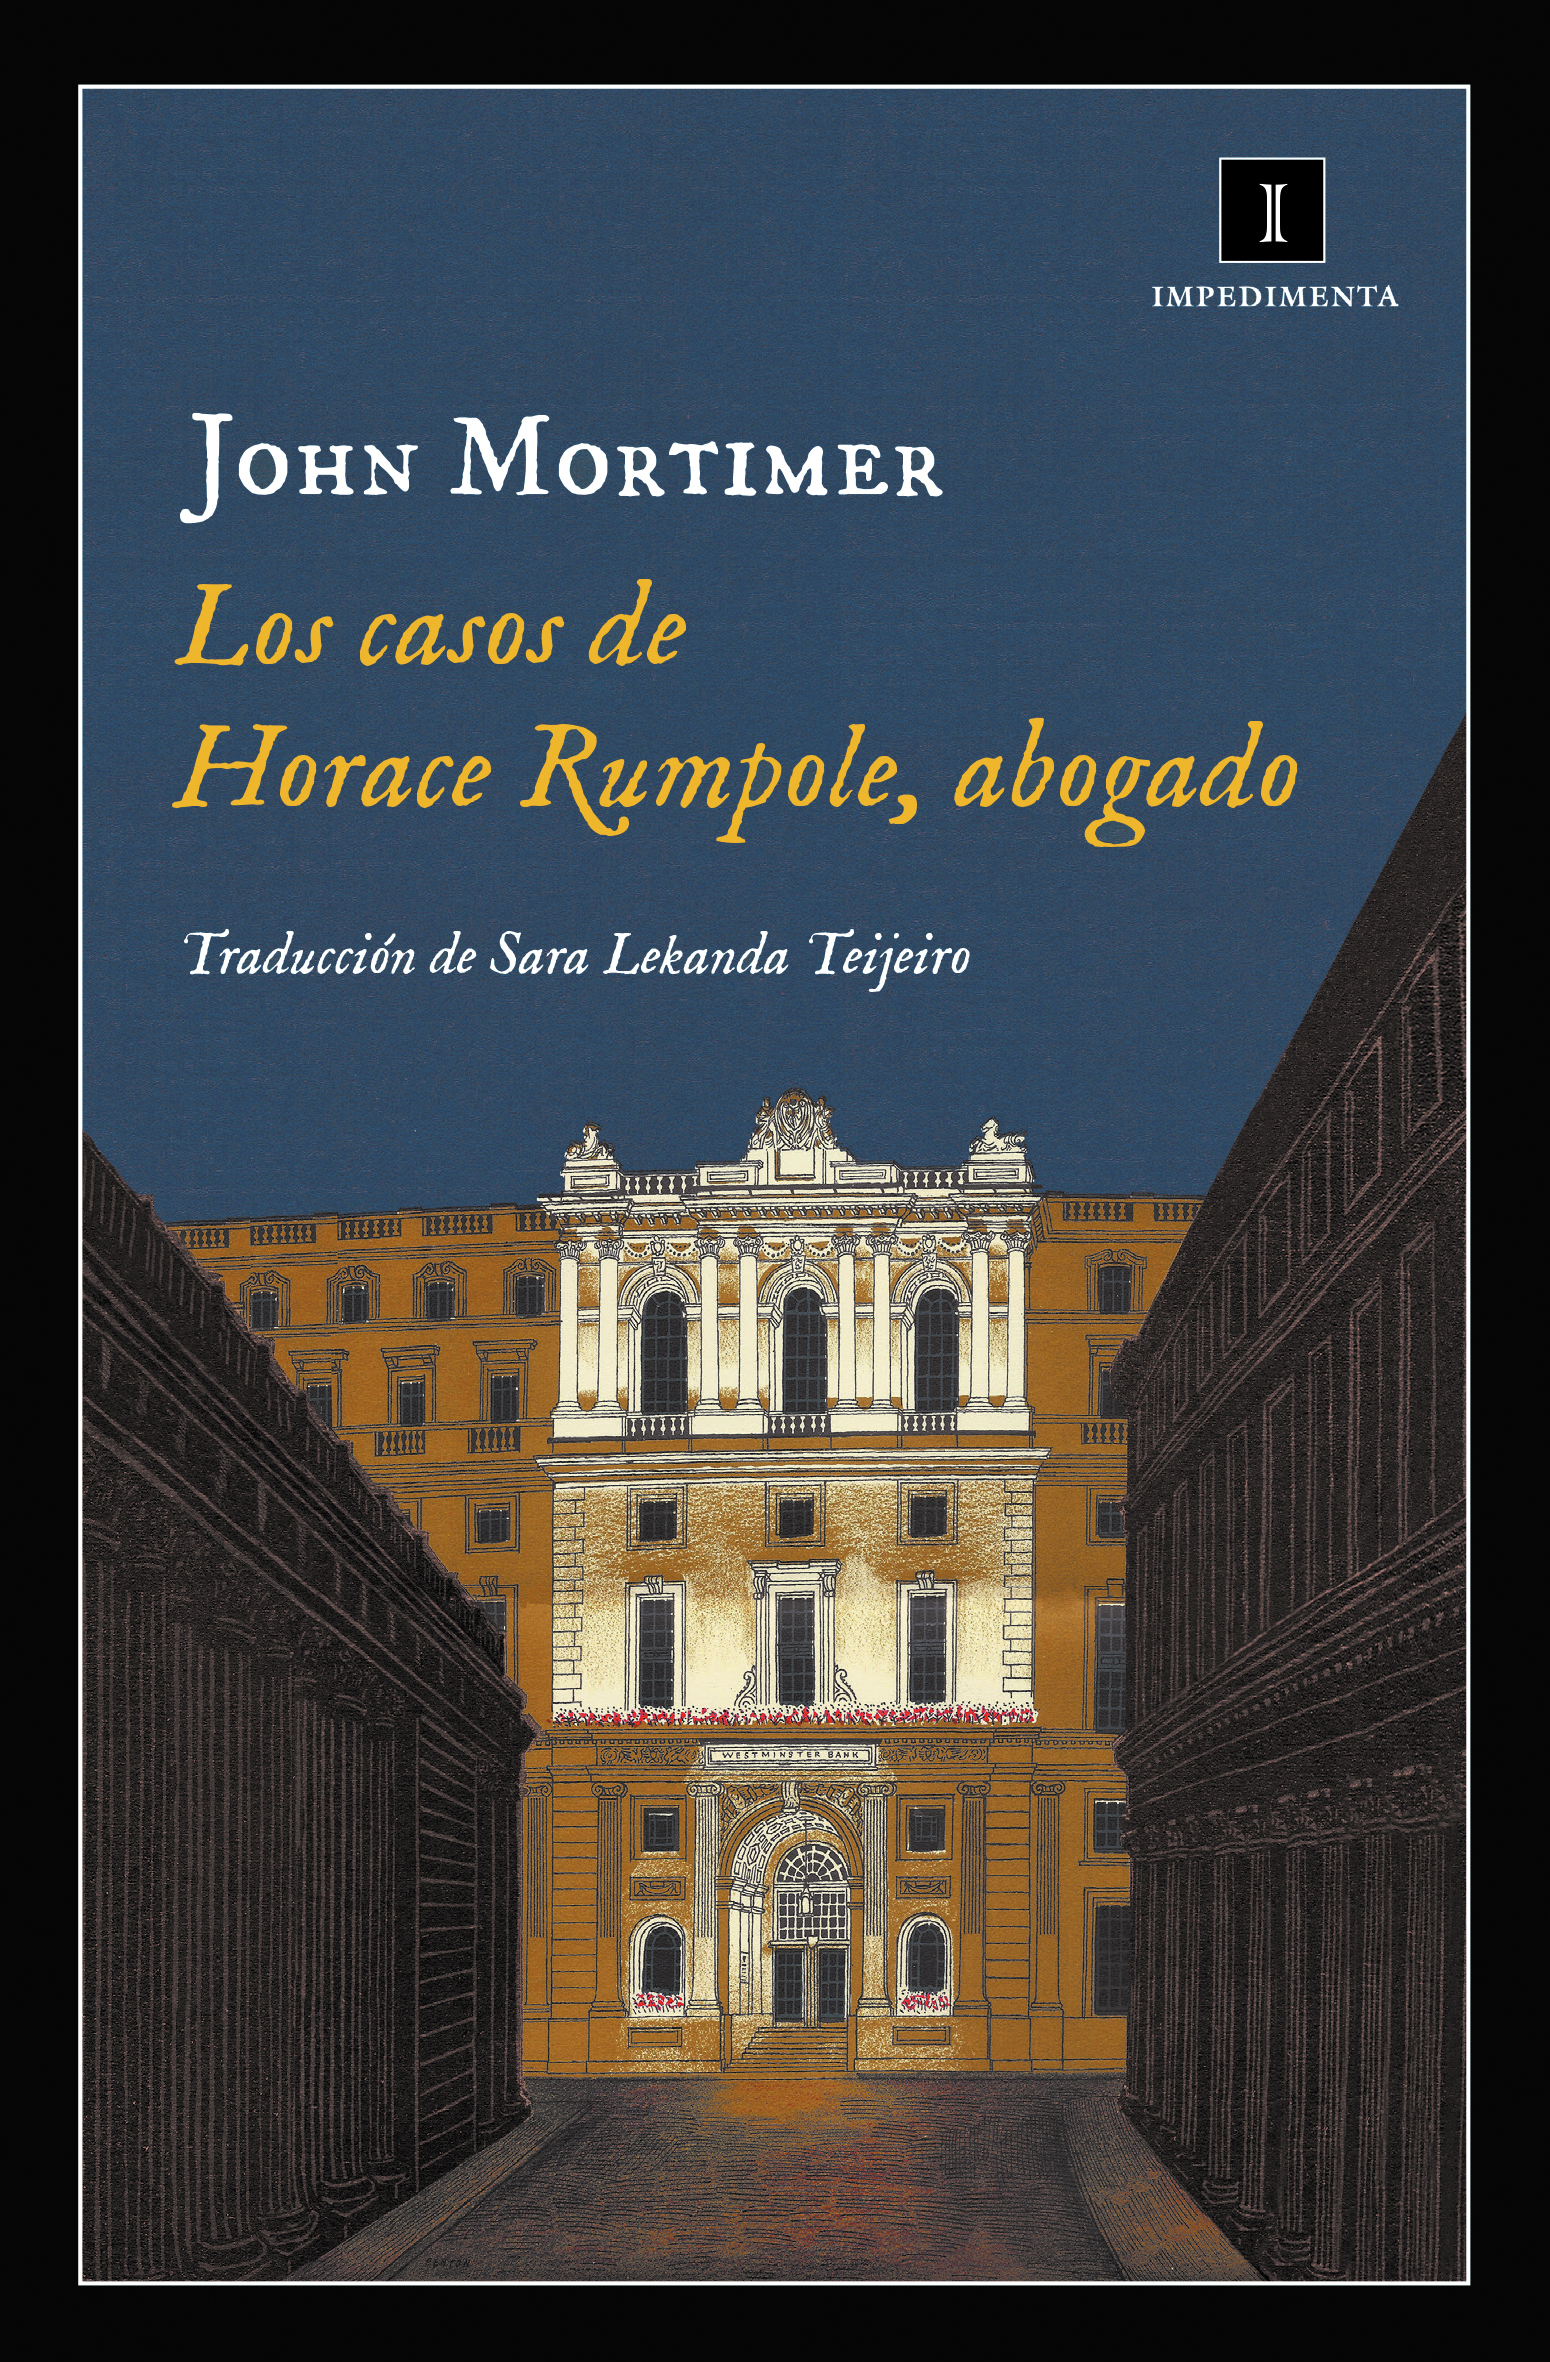 Los casos de Horace Rumpole, abogado (John Mortimer)